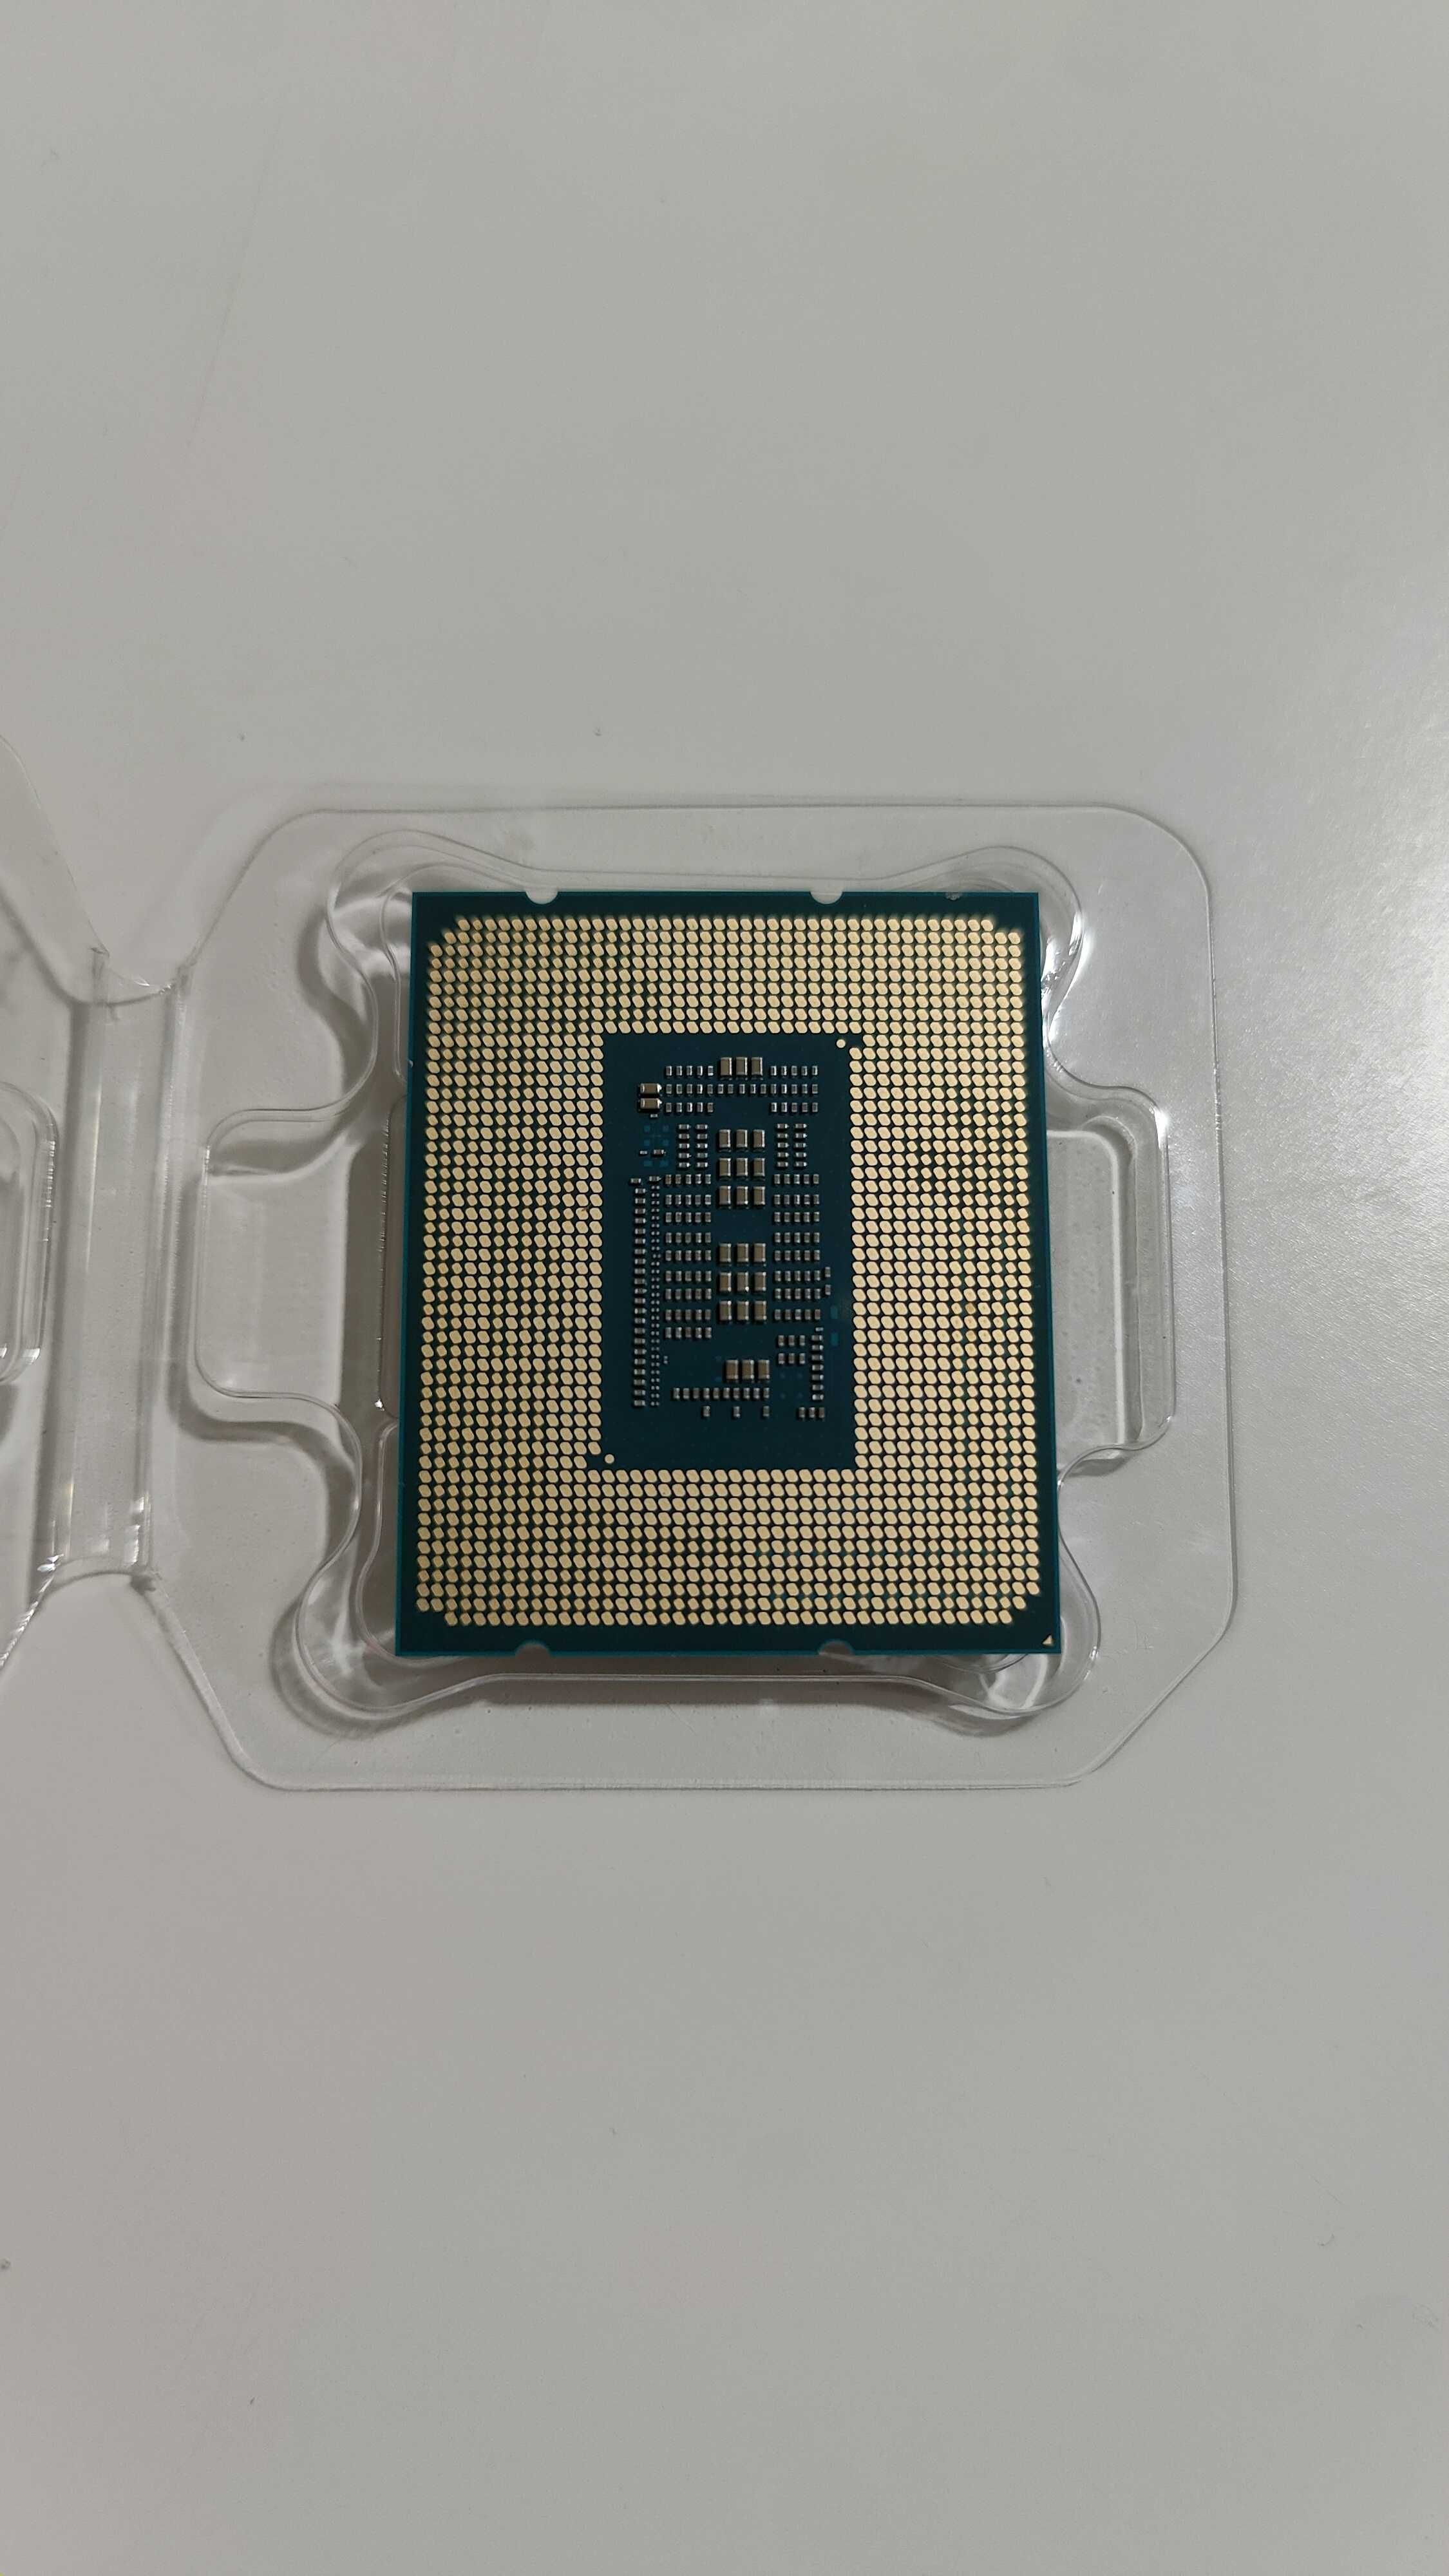 Processador Intel i7-12700 LGA 1700